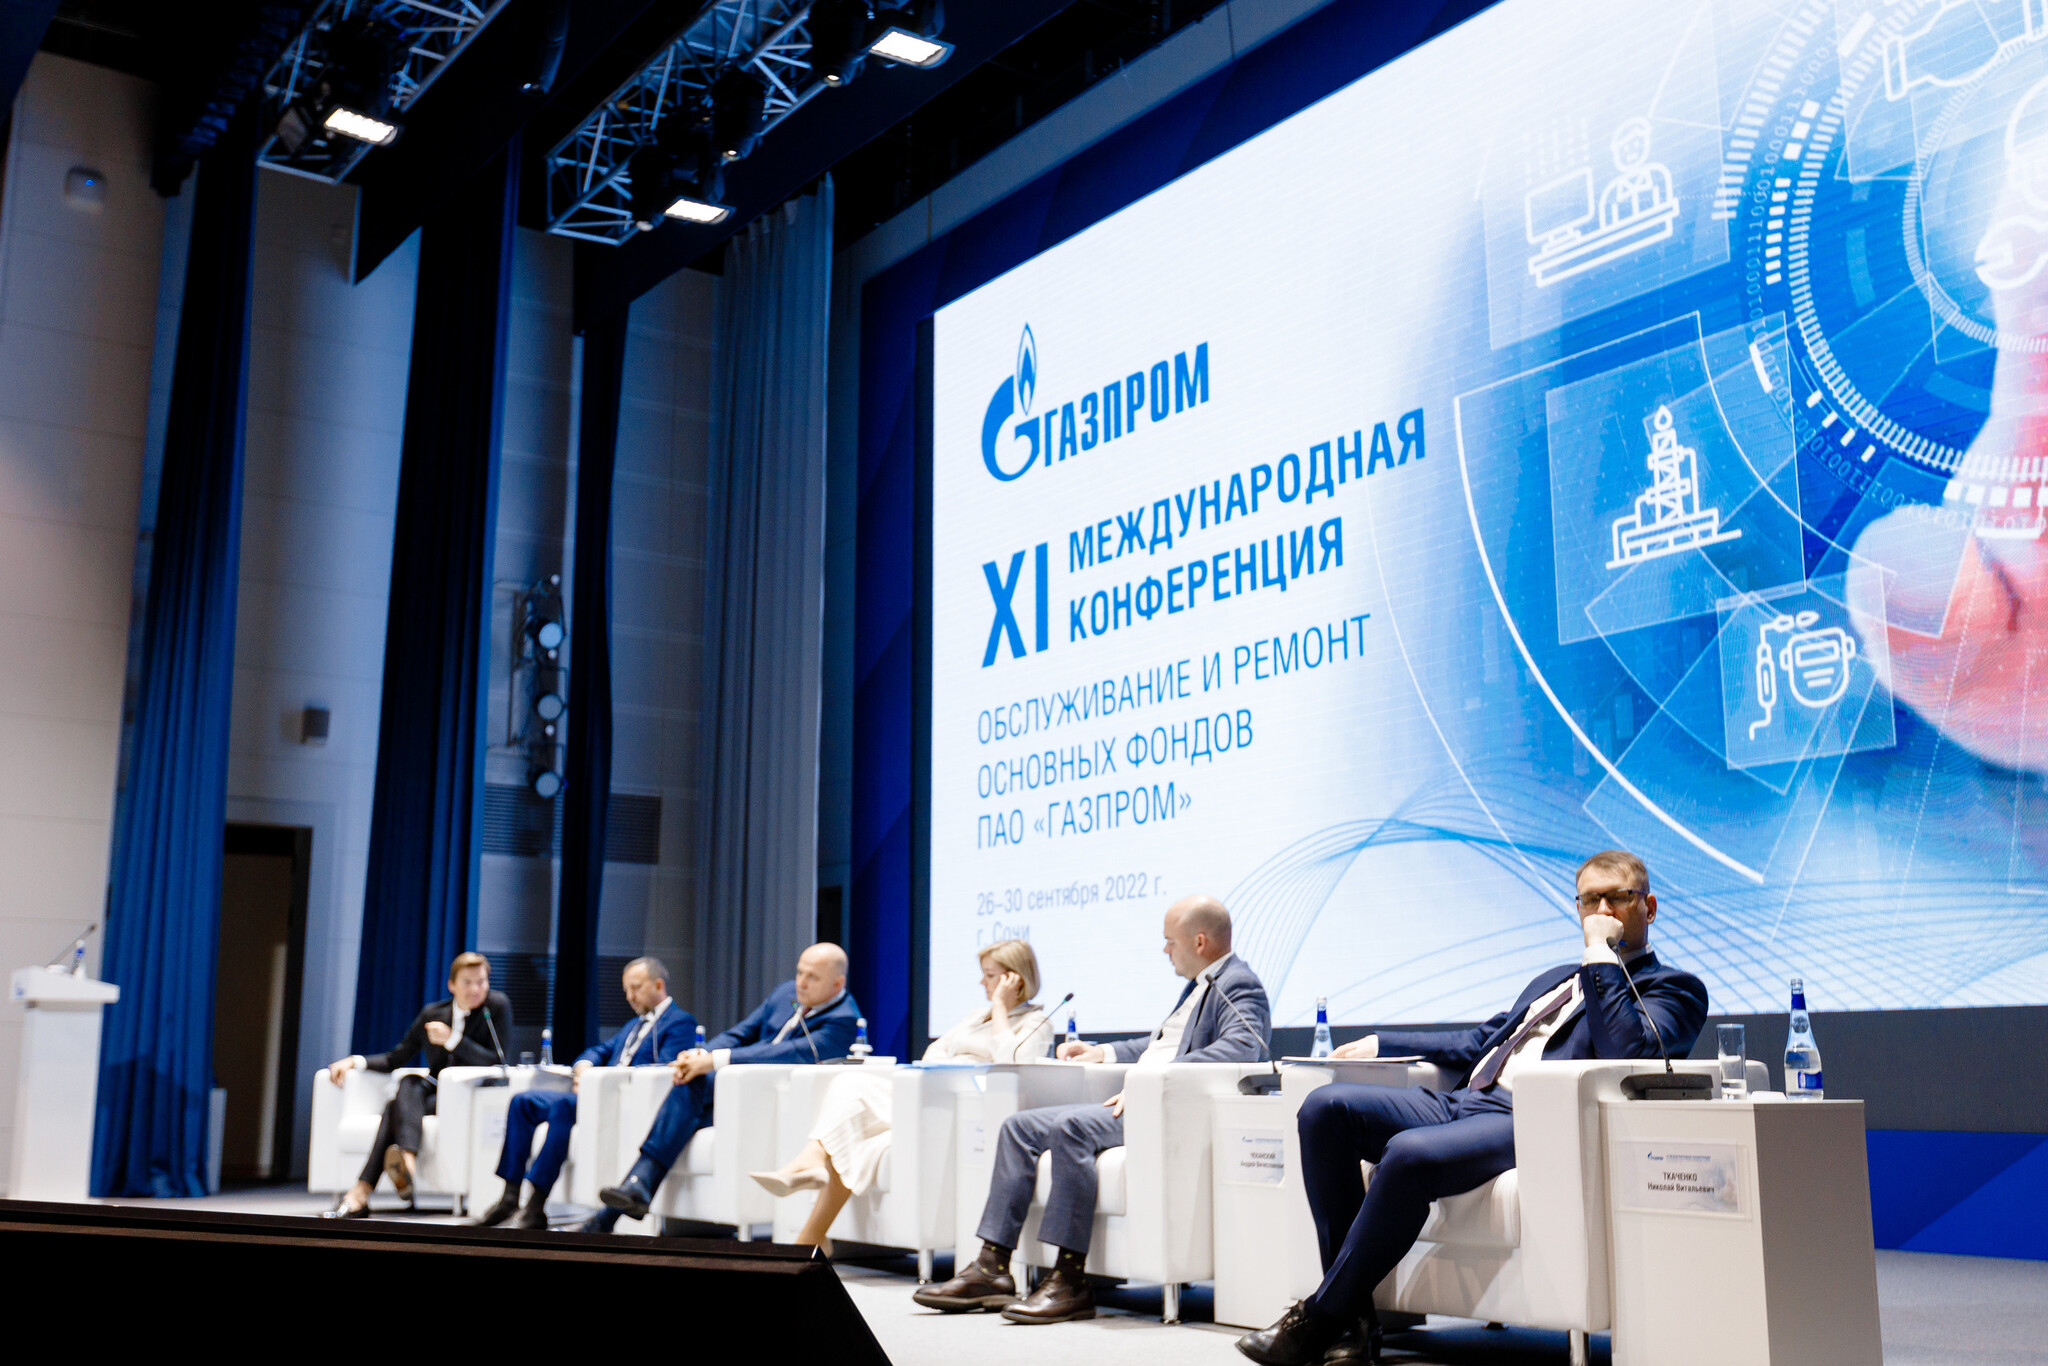 XI Международная Конференция «Обслуживание и ремонт основных фондов ПАО «Газпром»